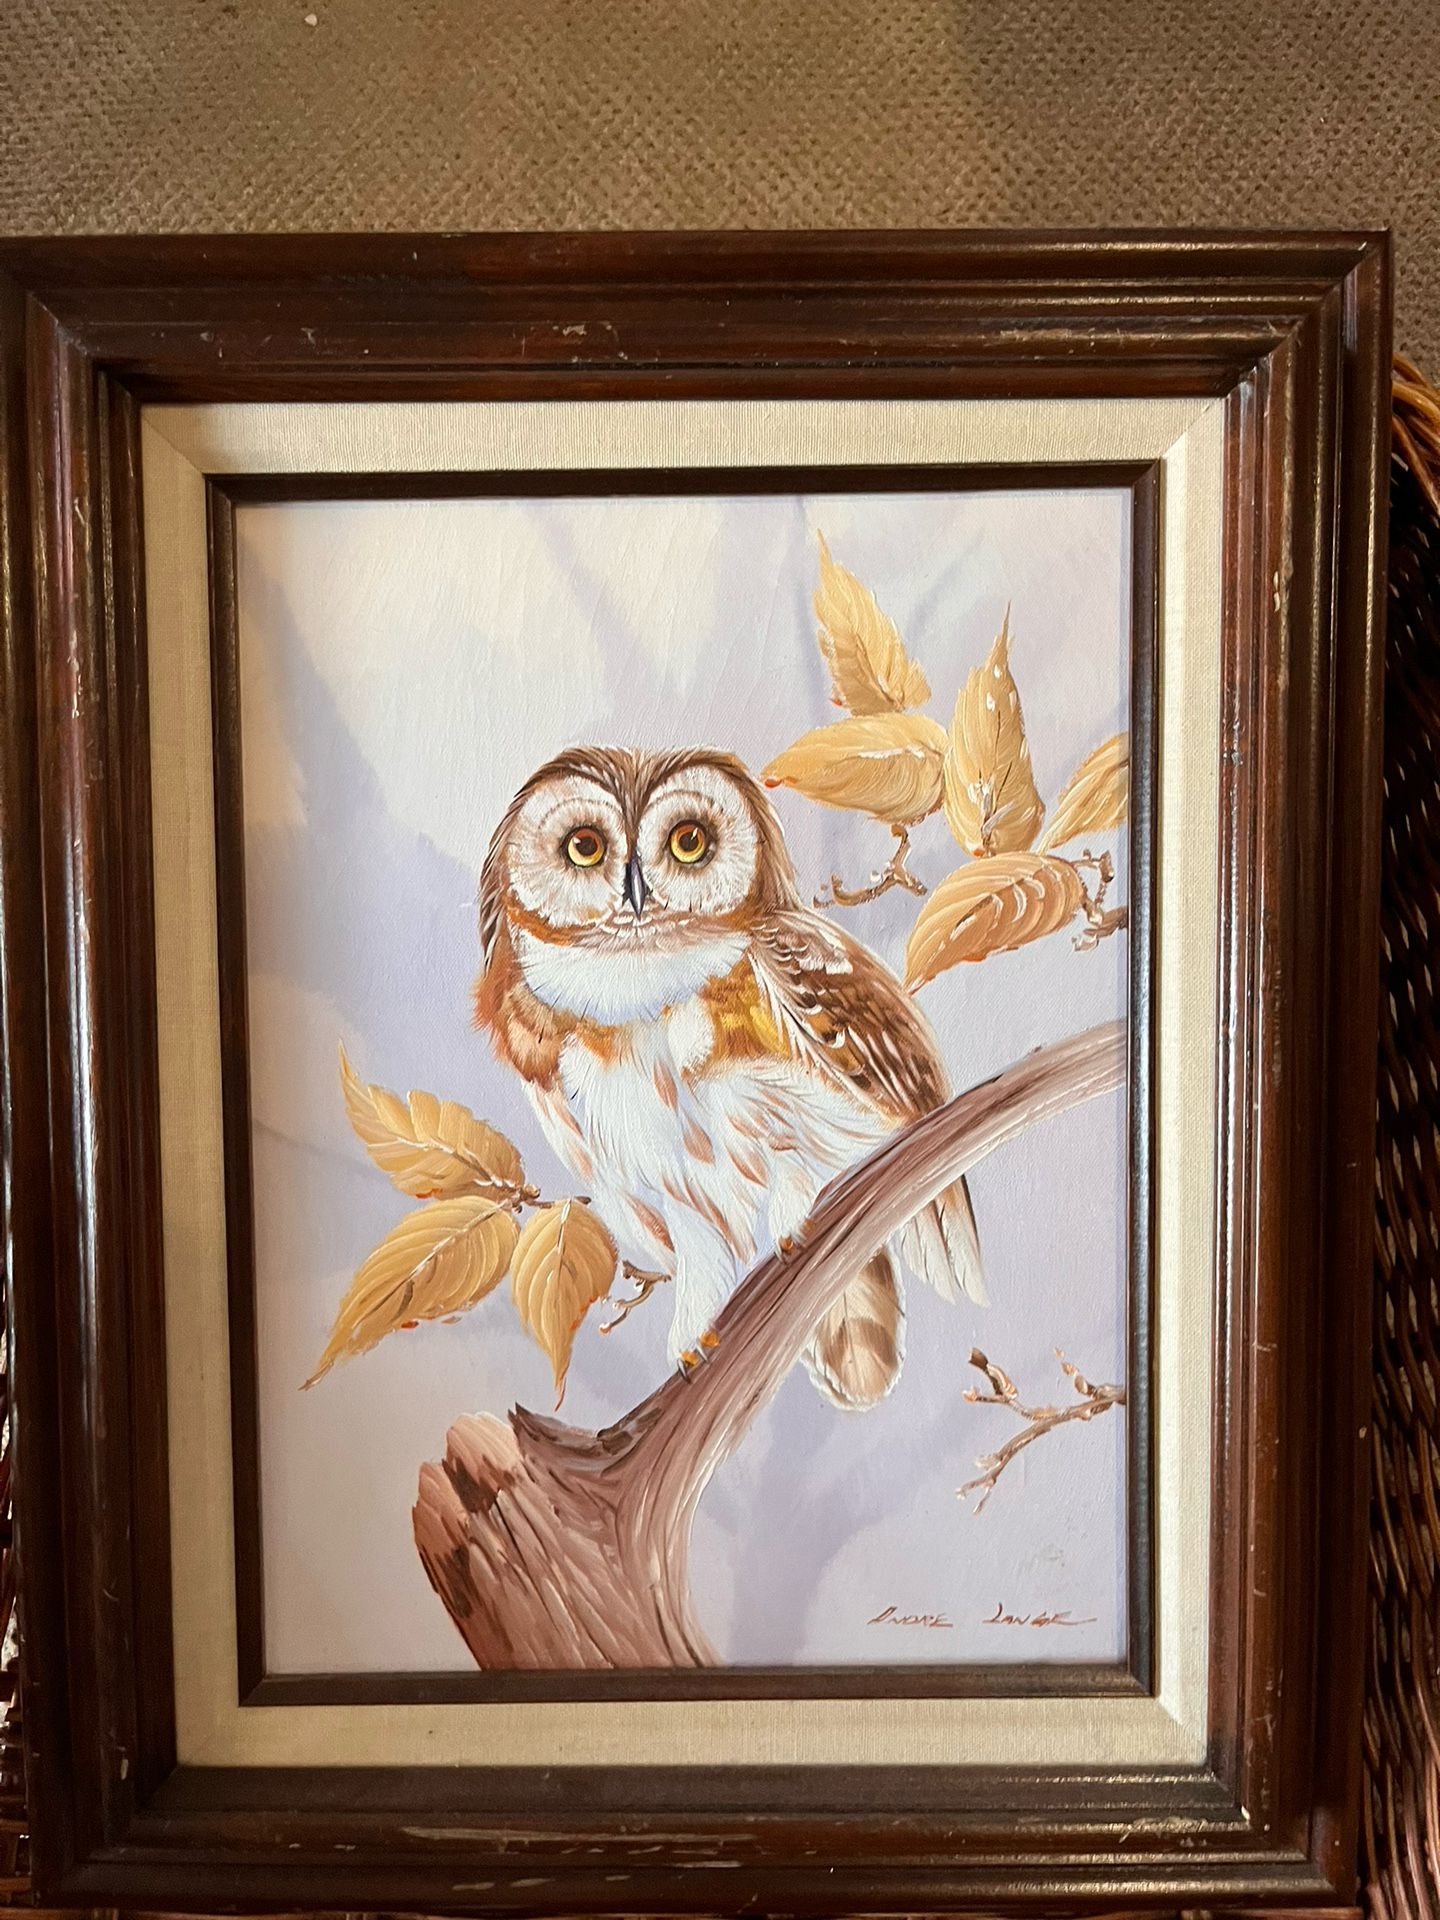 Vintage Oil Painting Owl on Branch Foliage Framed Andre Lange Signed